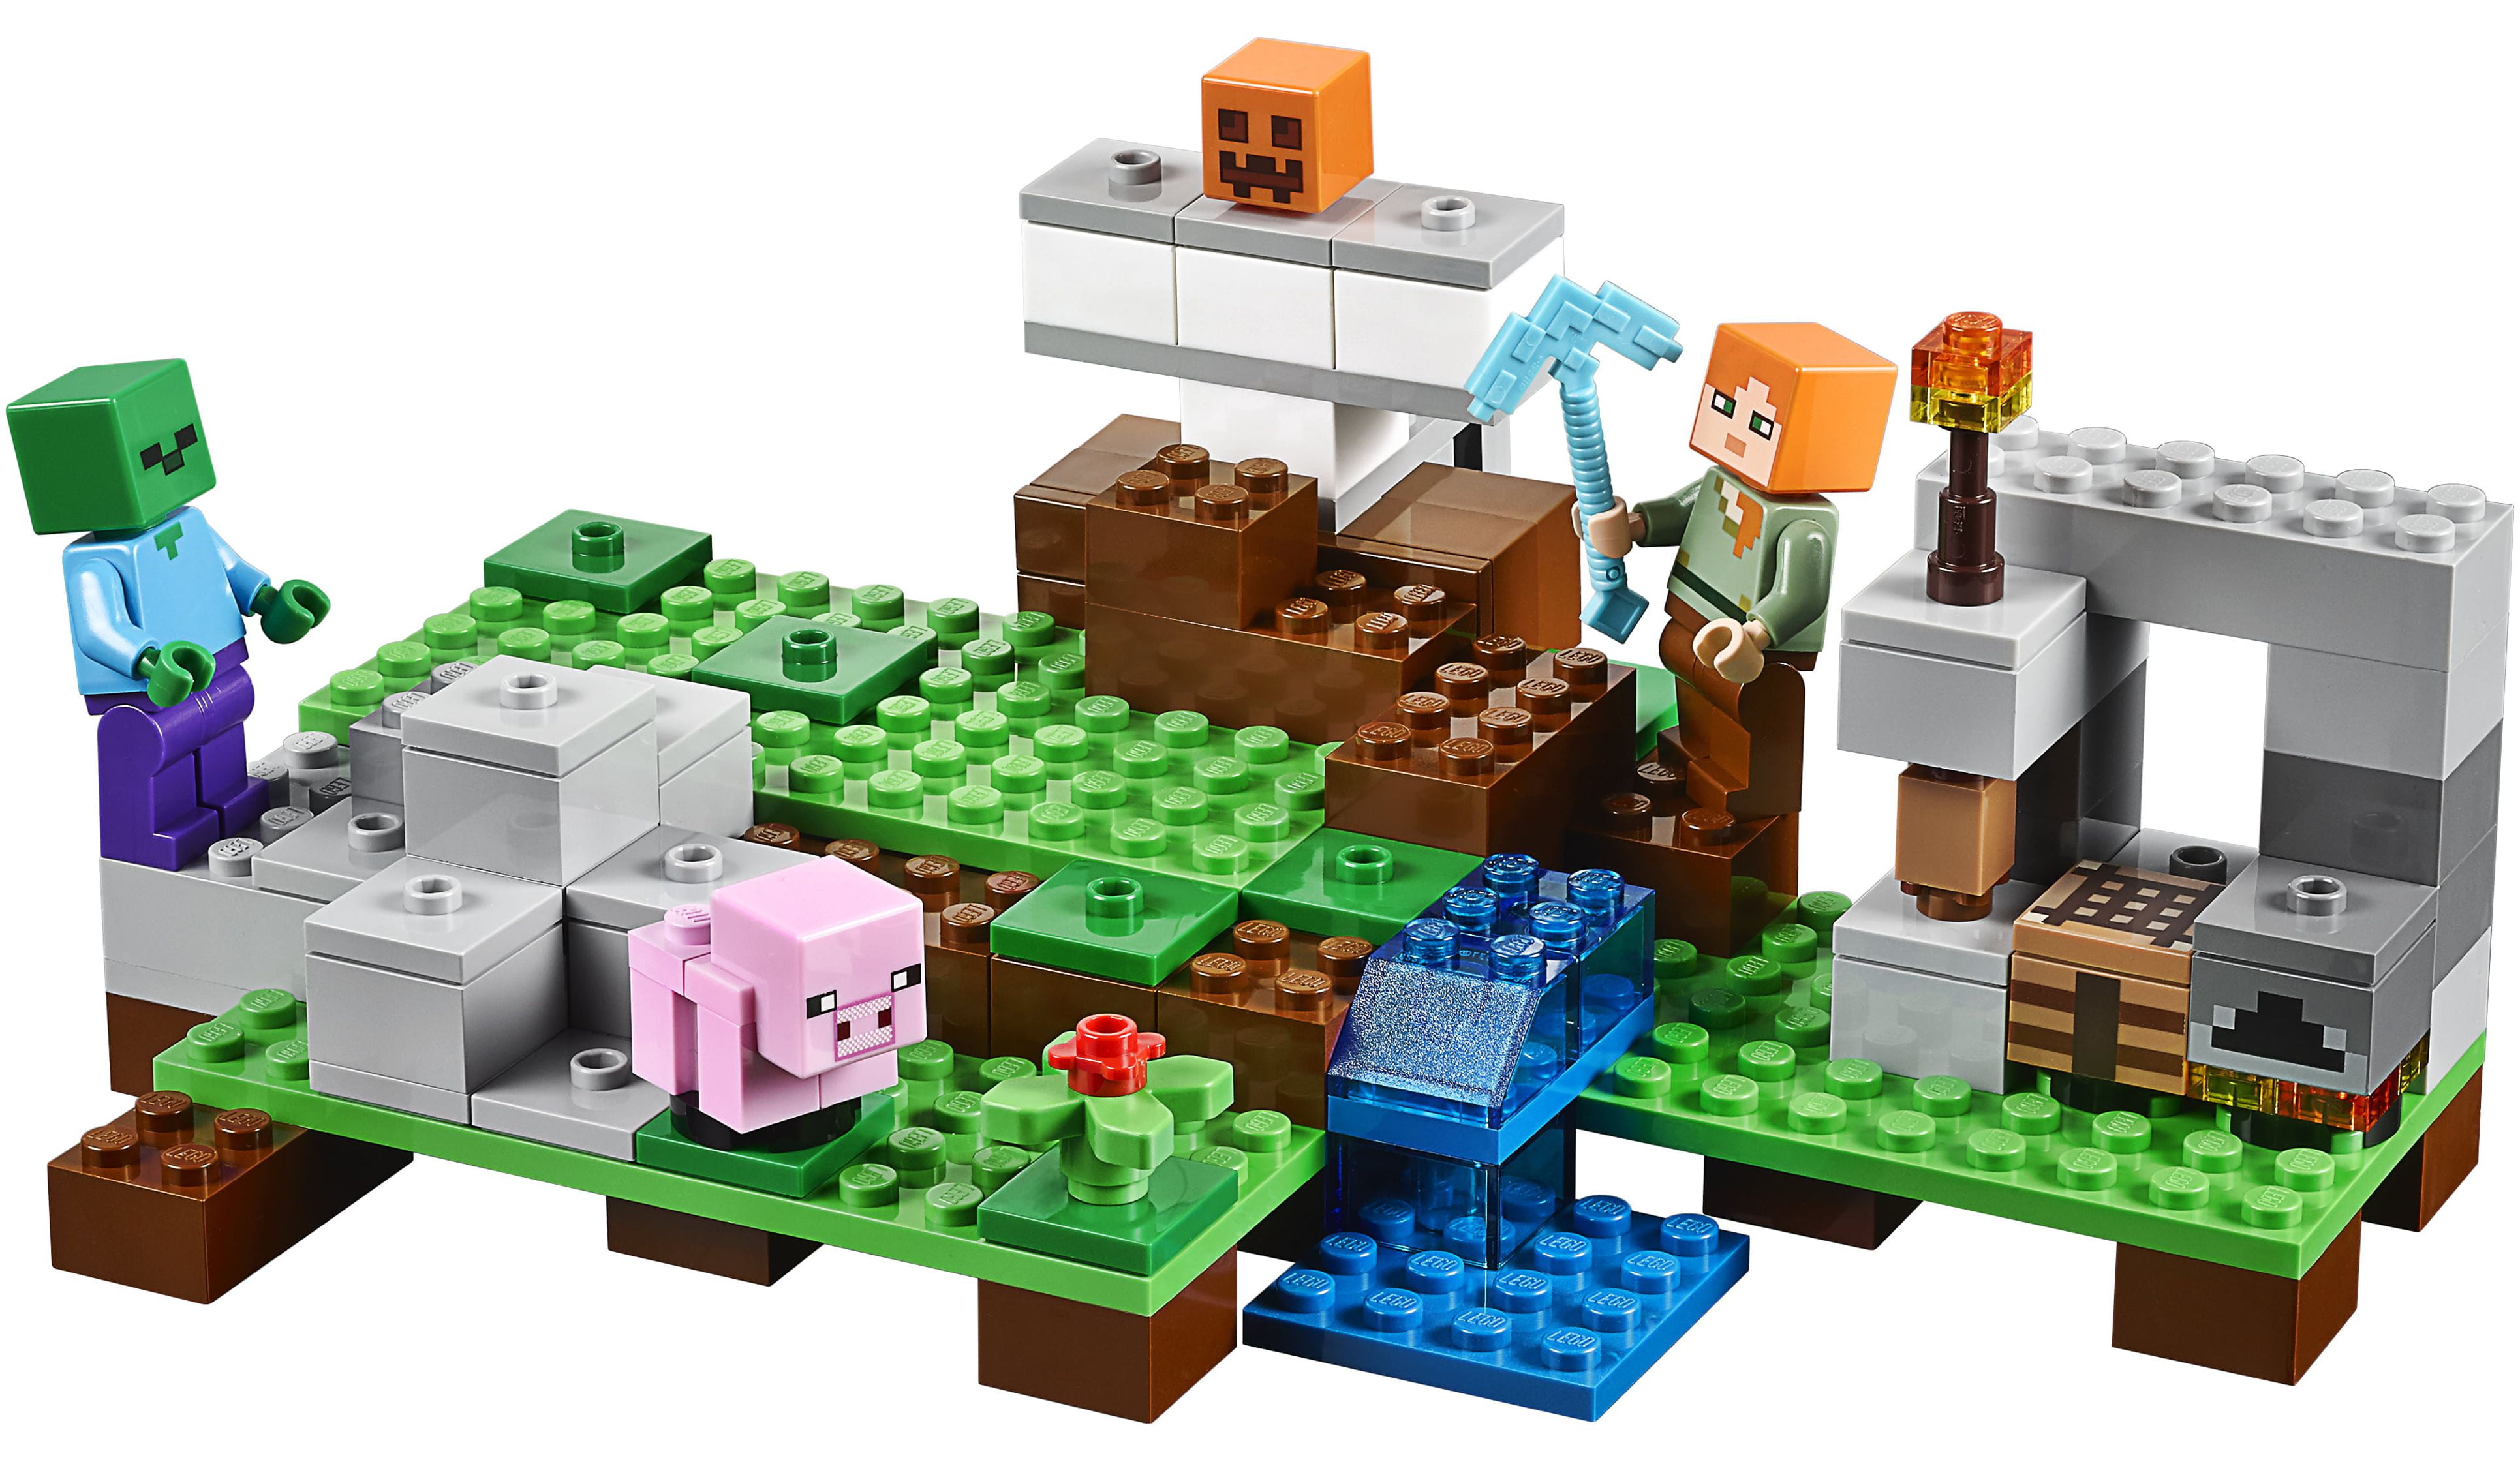 Lego Minecraft The Iron Golem, 21123